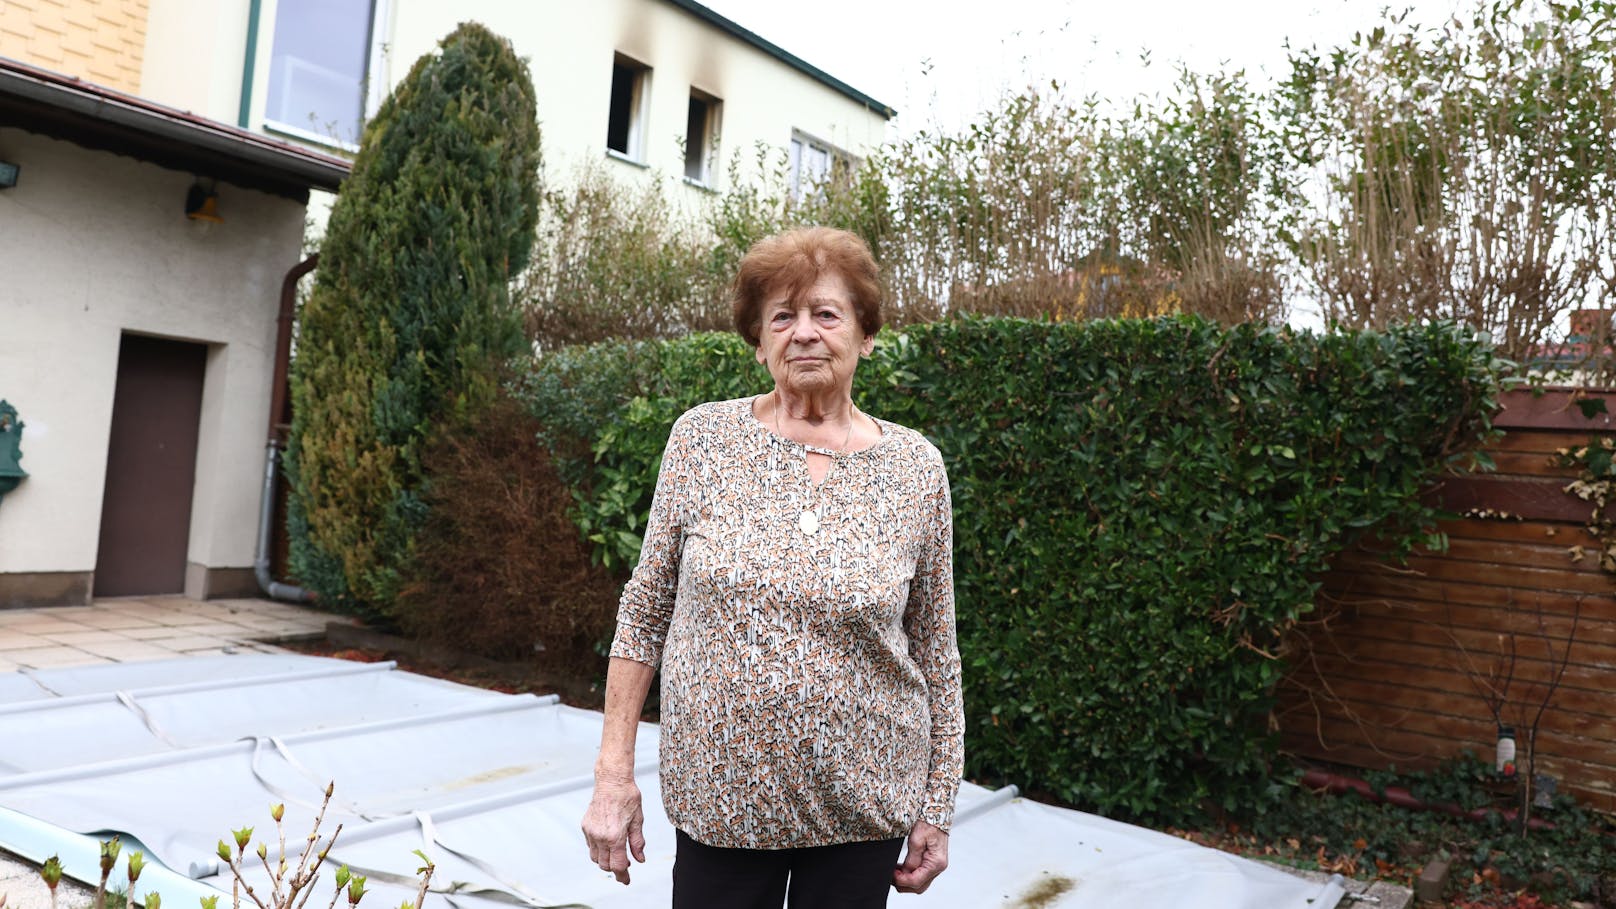 Nachbarin Erika (84) kennt den 33-Jährigen schon sehr lange: "Er ist sehr freundlich und hilfsbereit."